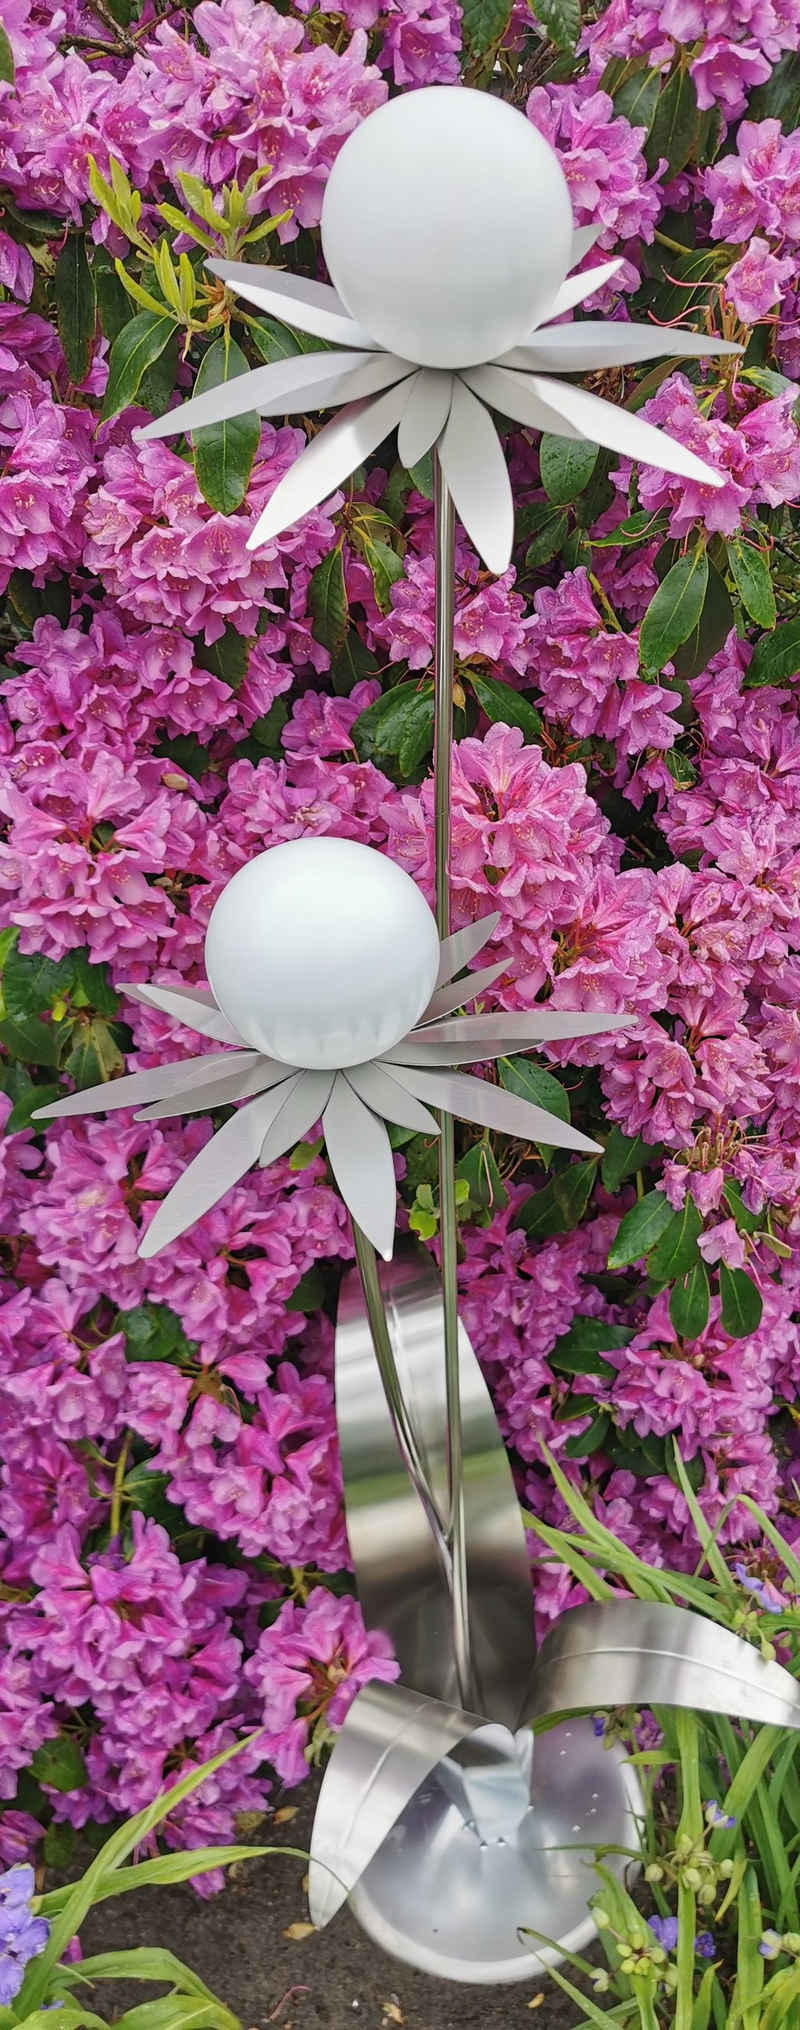 Jürgen Bocker - Gartenambiente Gartenstecker Blume Milano 120 cm Kugel weiß matt Standfuß Gartendeko